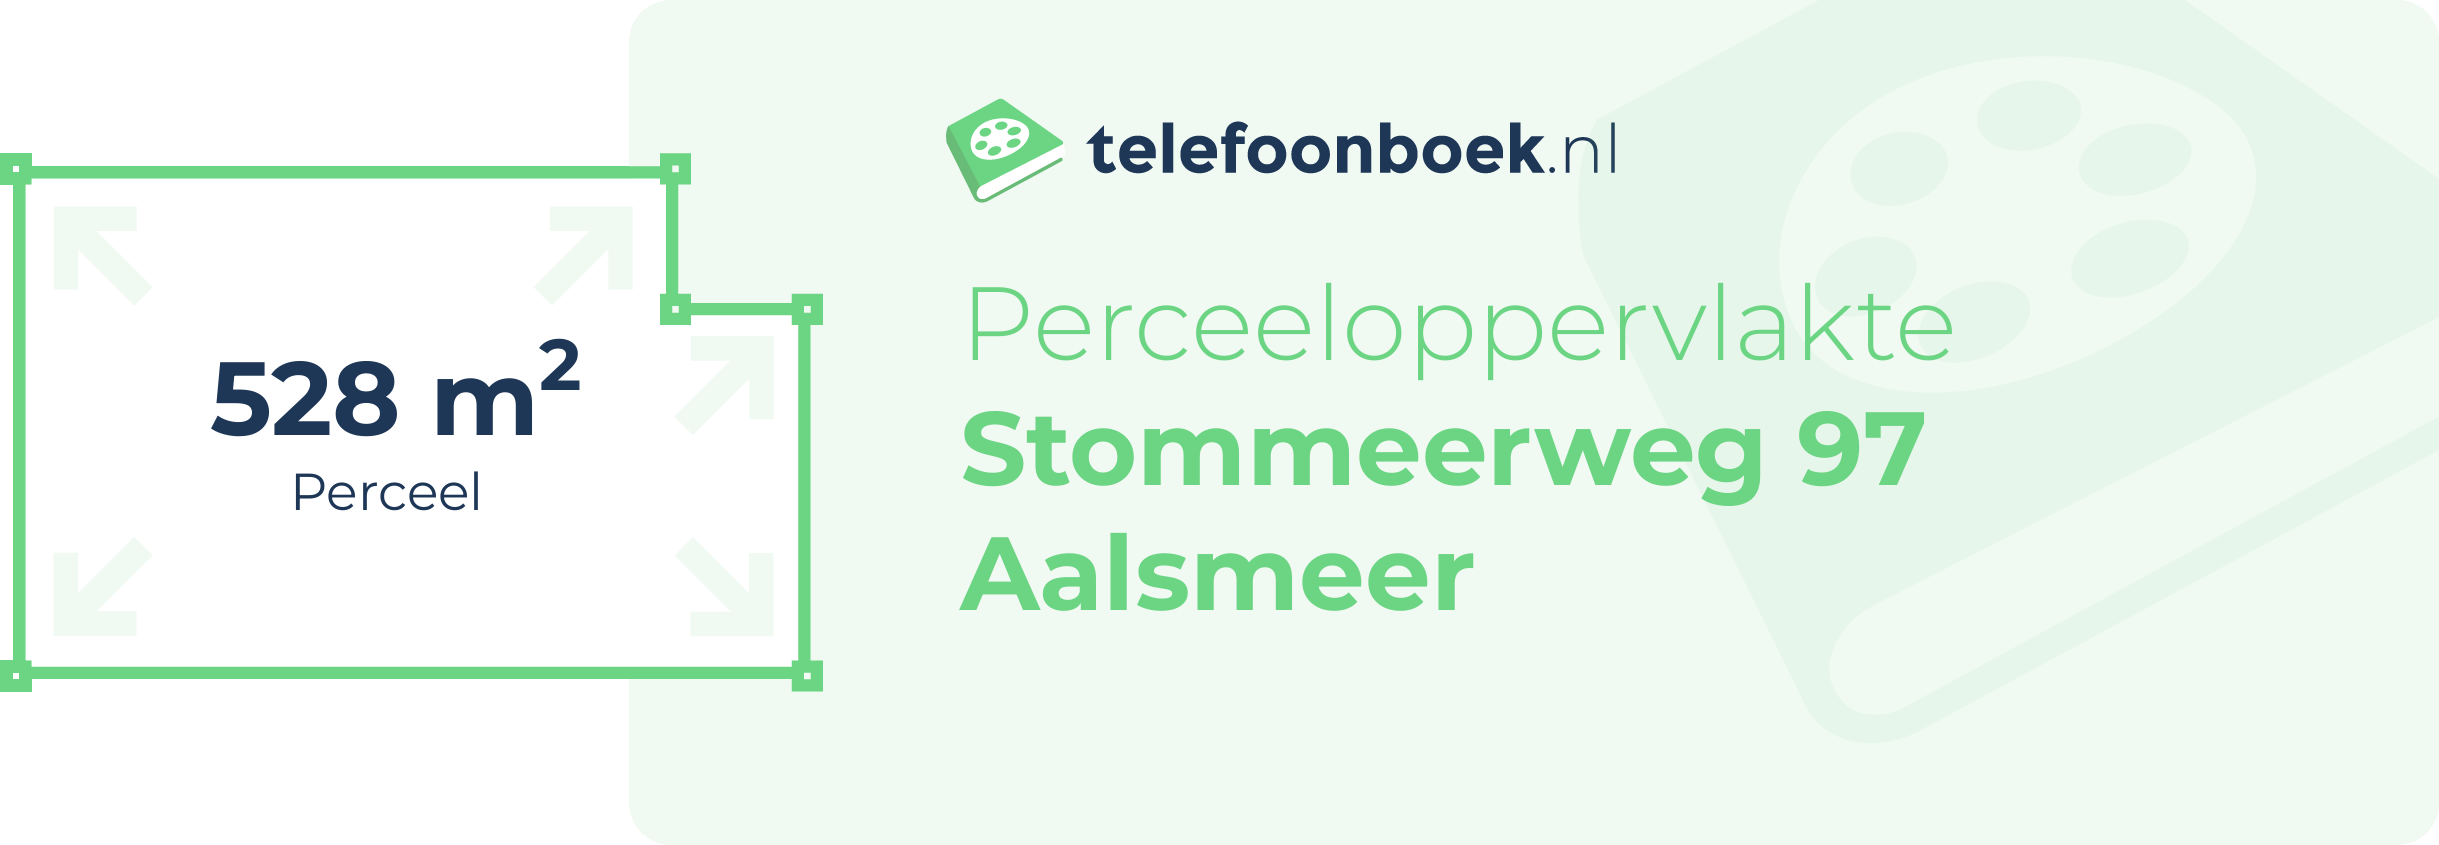 Perceeloppervlakte Stommeerweg 97 Aalsmeer